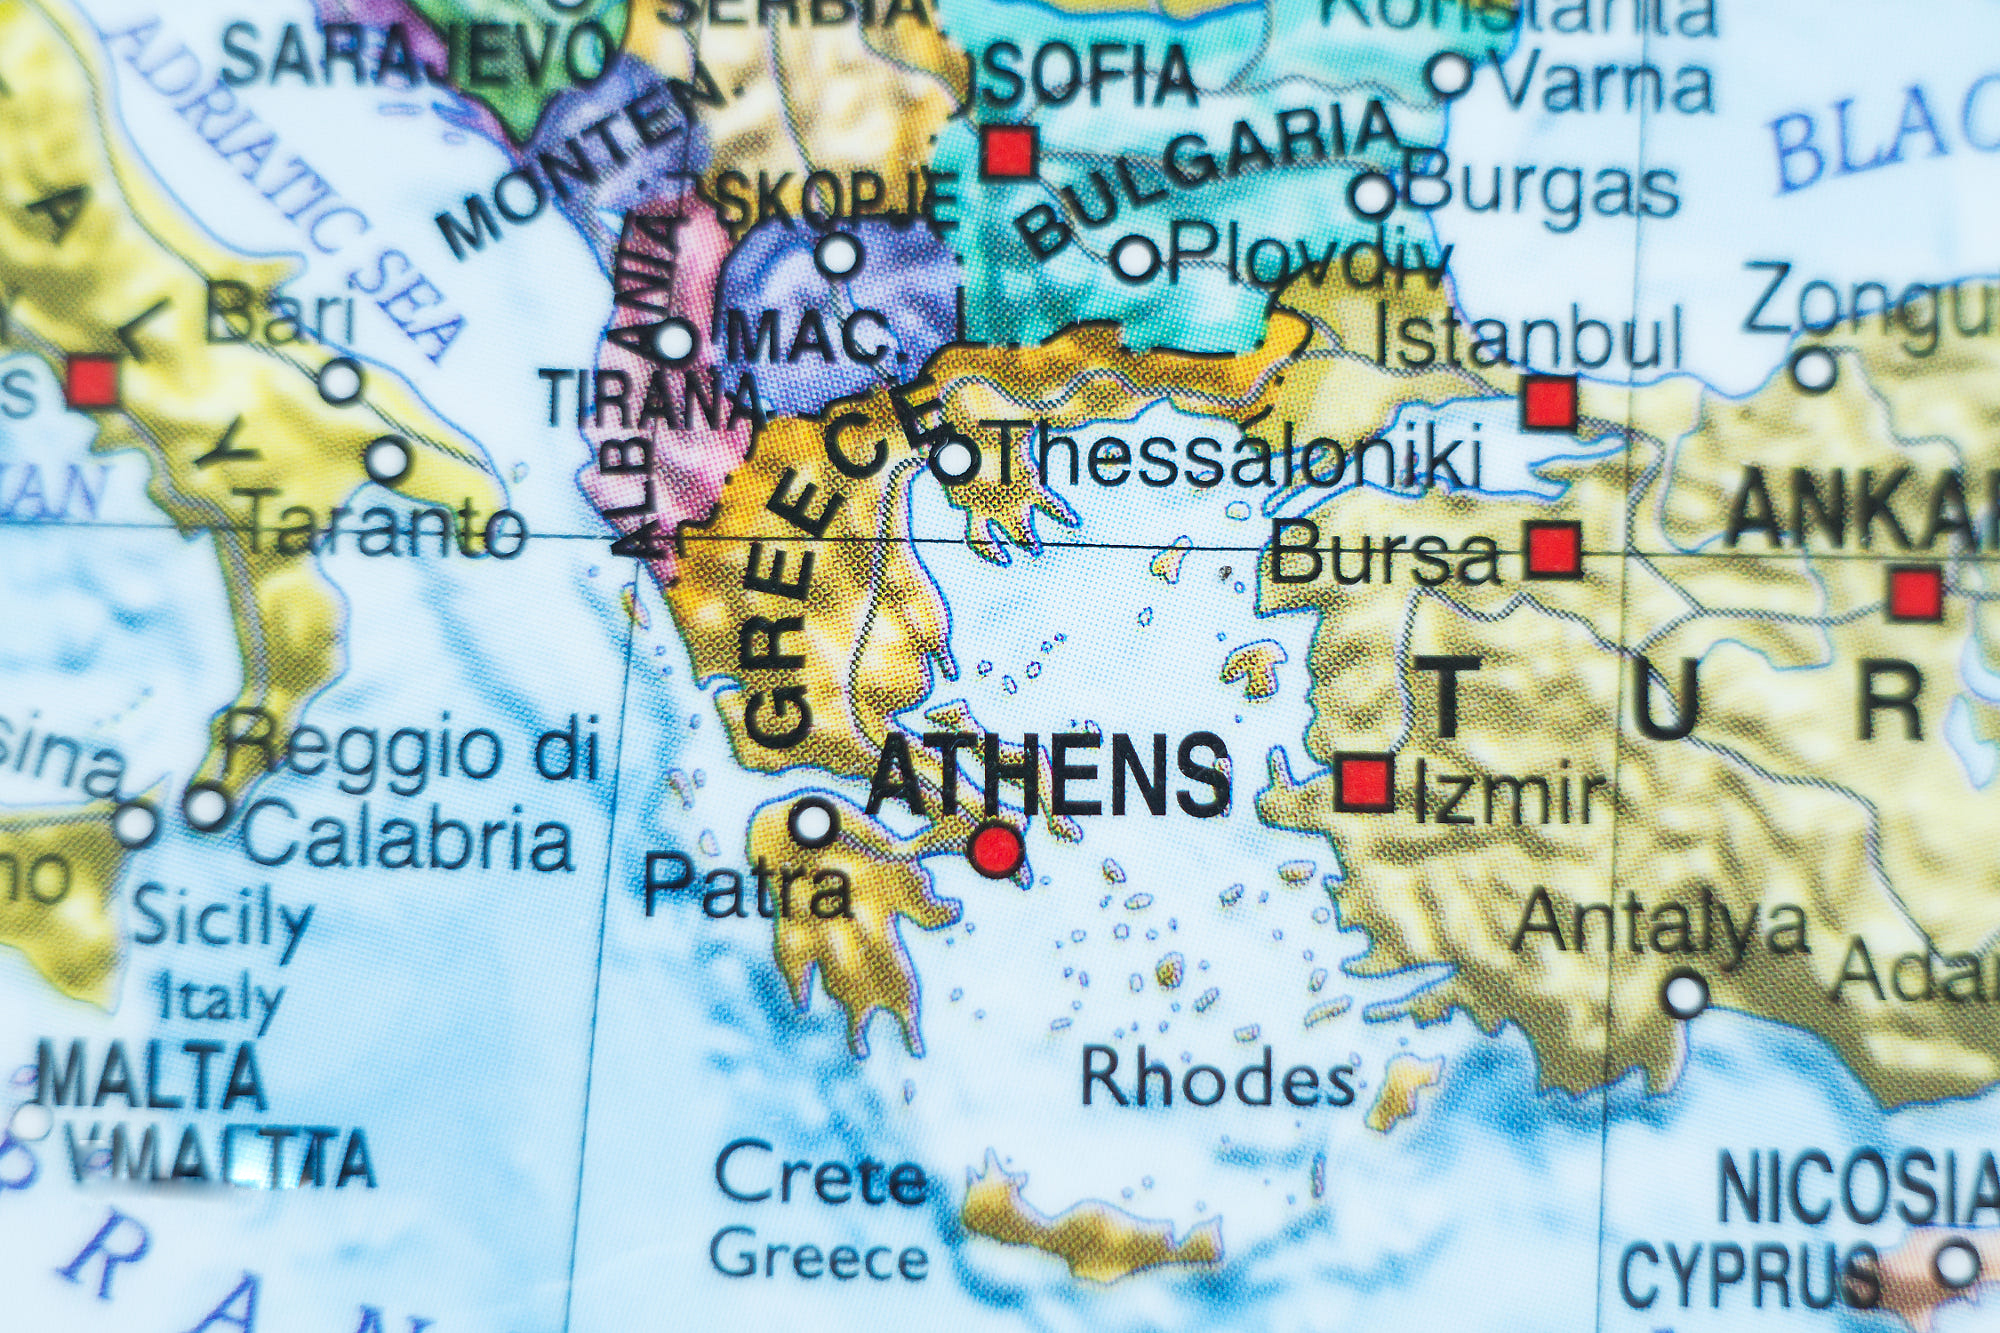 جغرافیای یونان